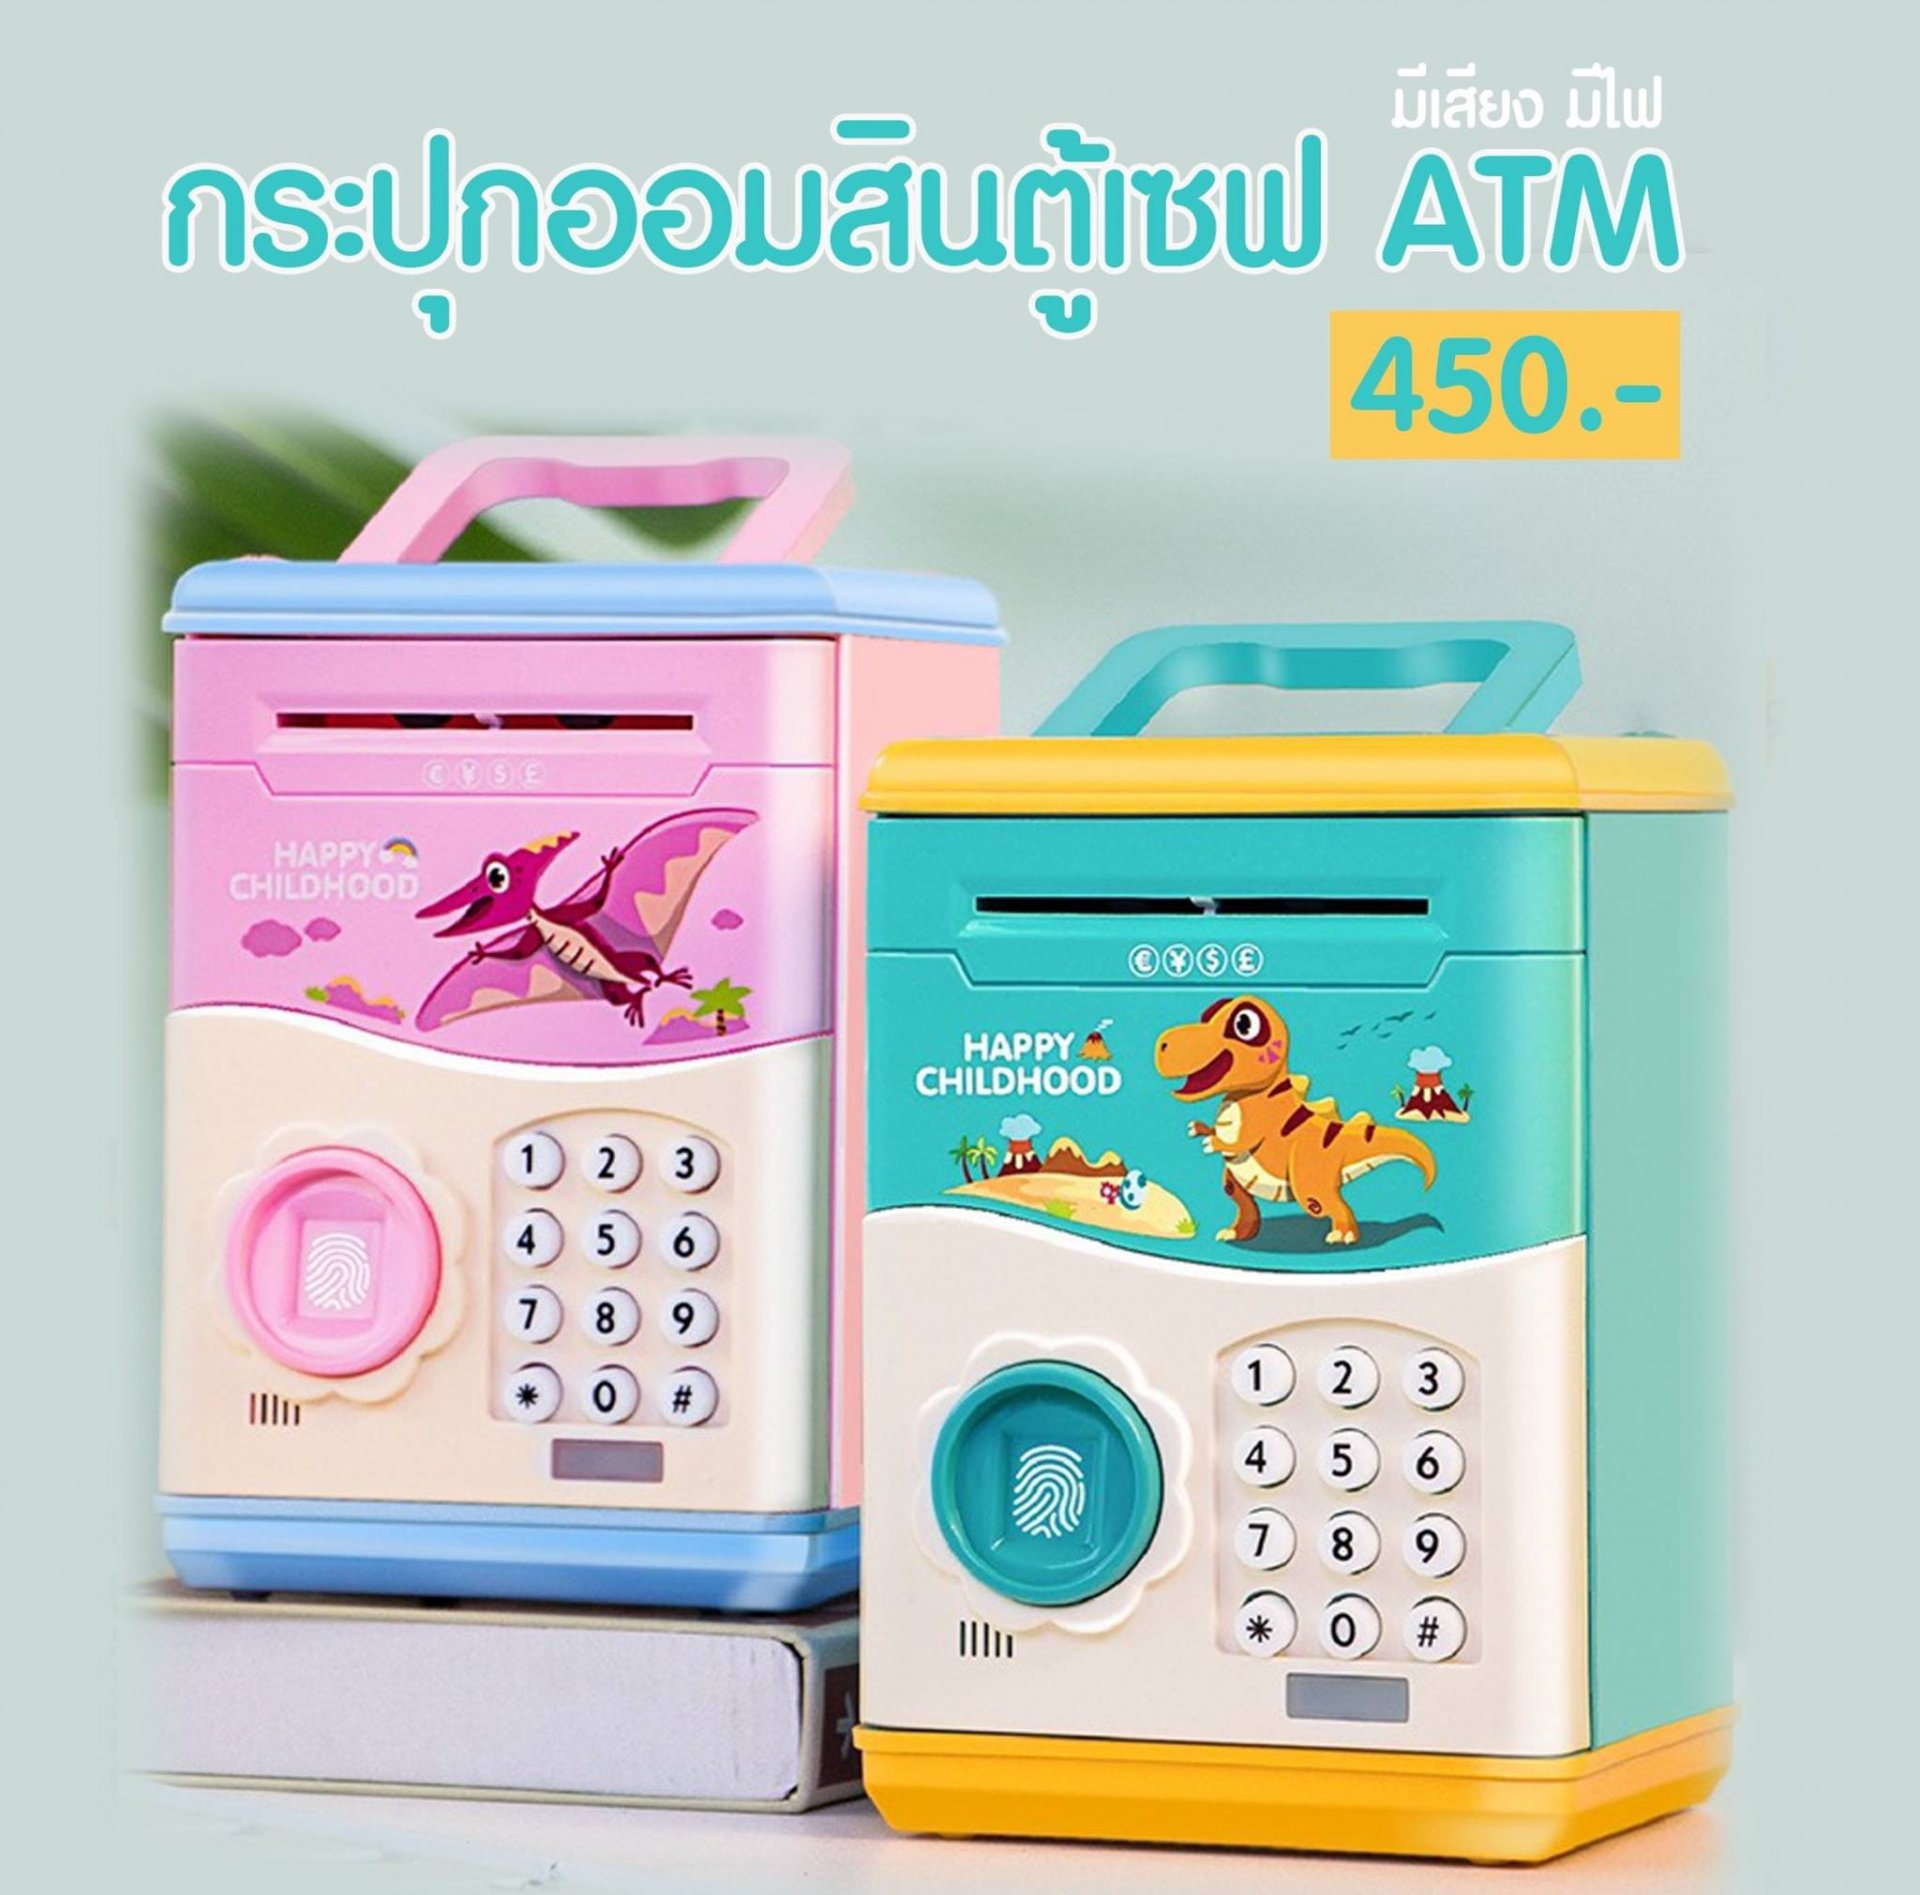 กระปุกออมสินตู้เซฟ (ATM) 